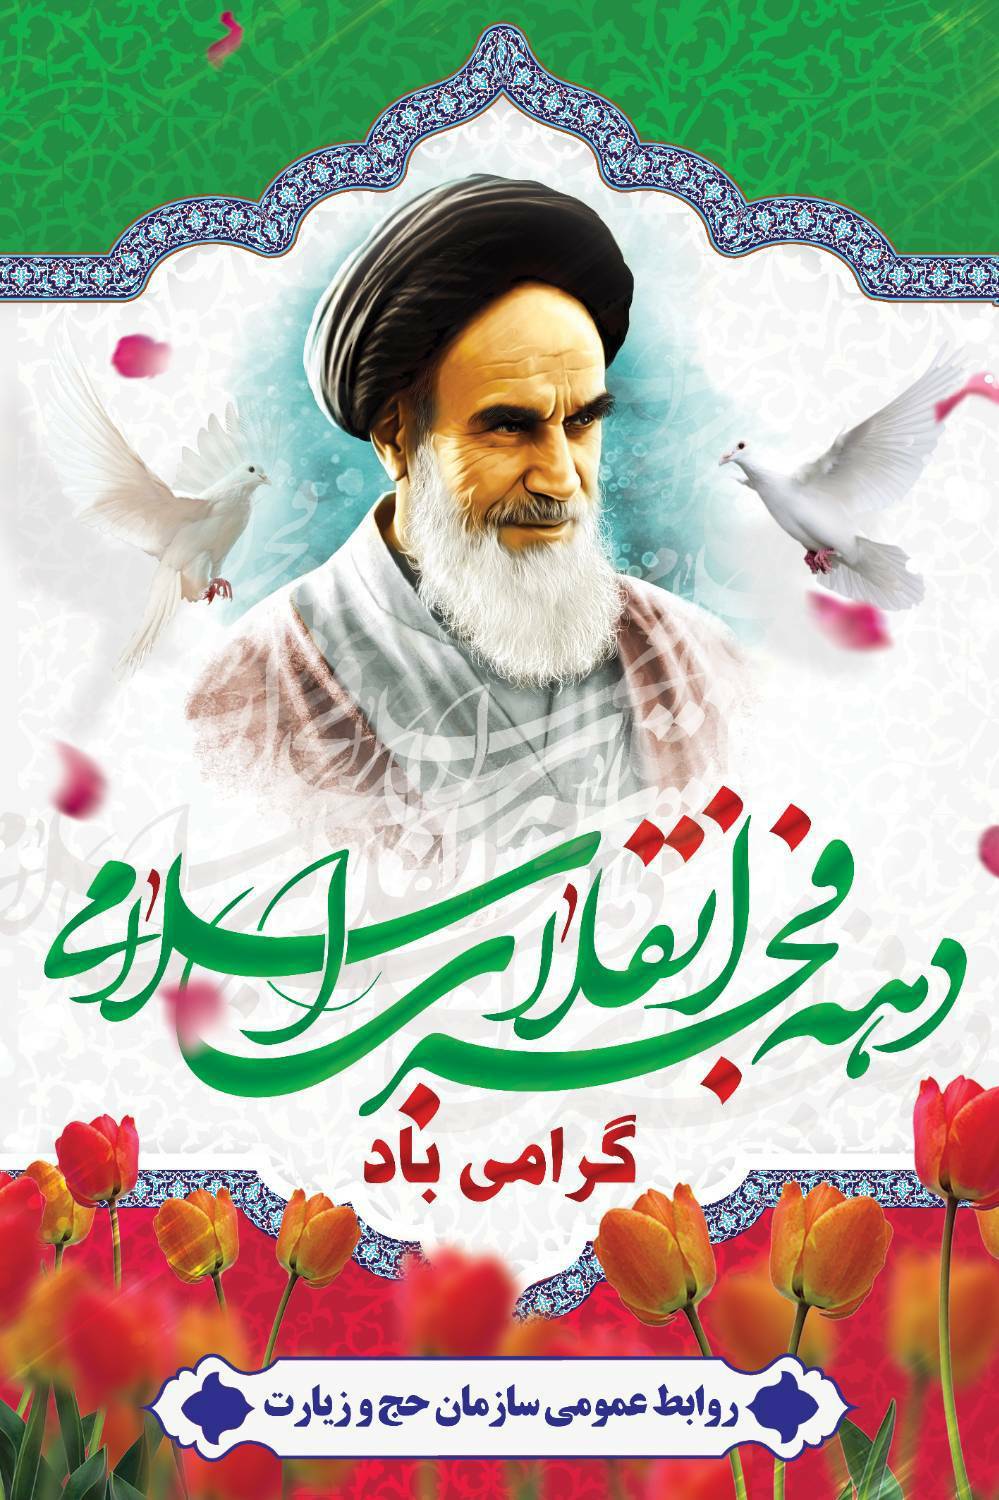 دهه فجر انقلاب اسلامی ایران مبارک باد 